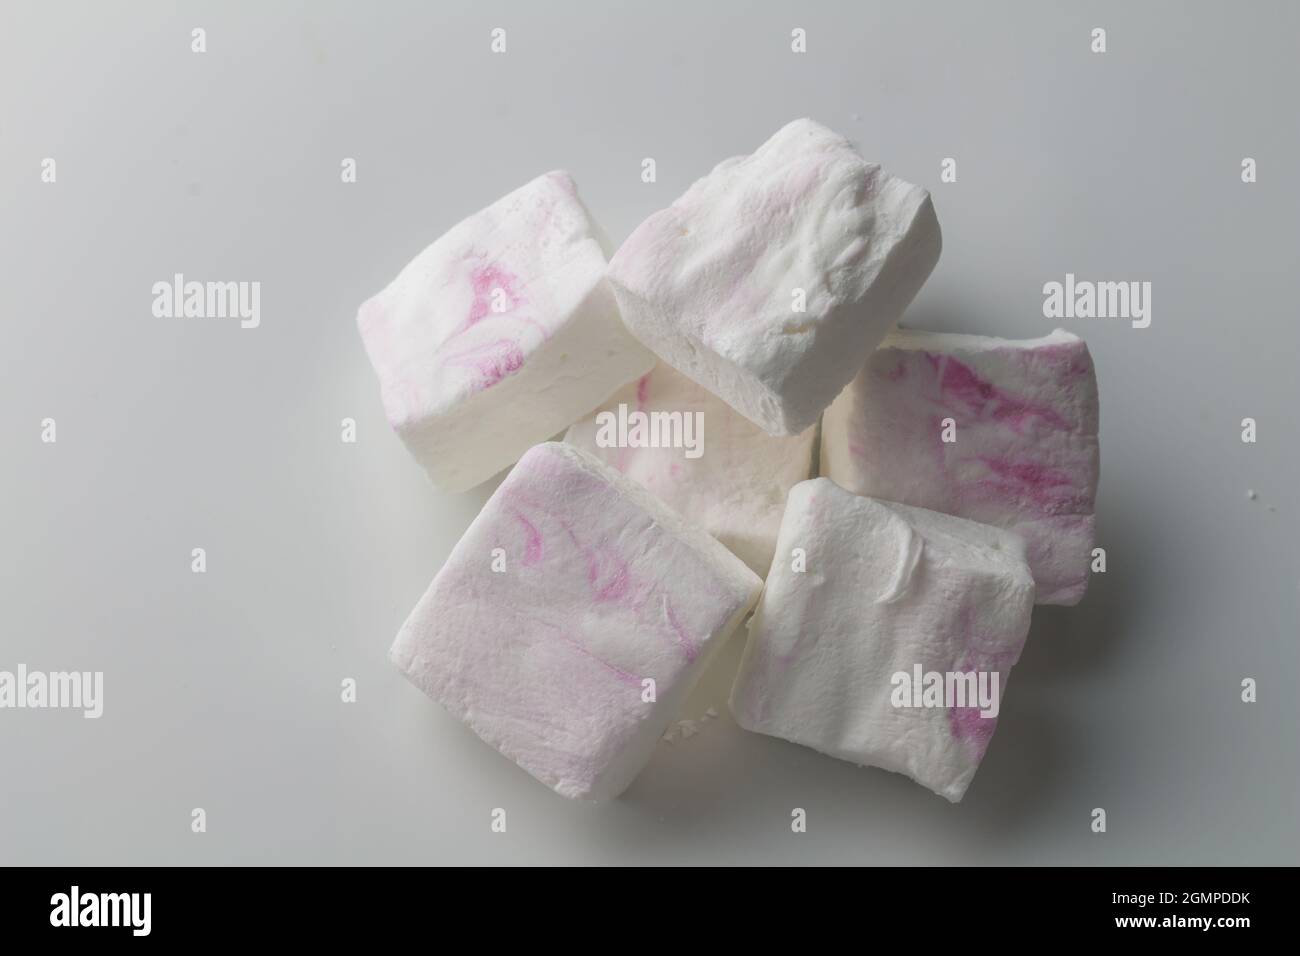 Marshallows auf Weiß - Stapel von benutzerdefinierten weißen und rosa Marshallow Süßigkeiten isoliert - Draufsicht Foto Stockfoto